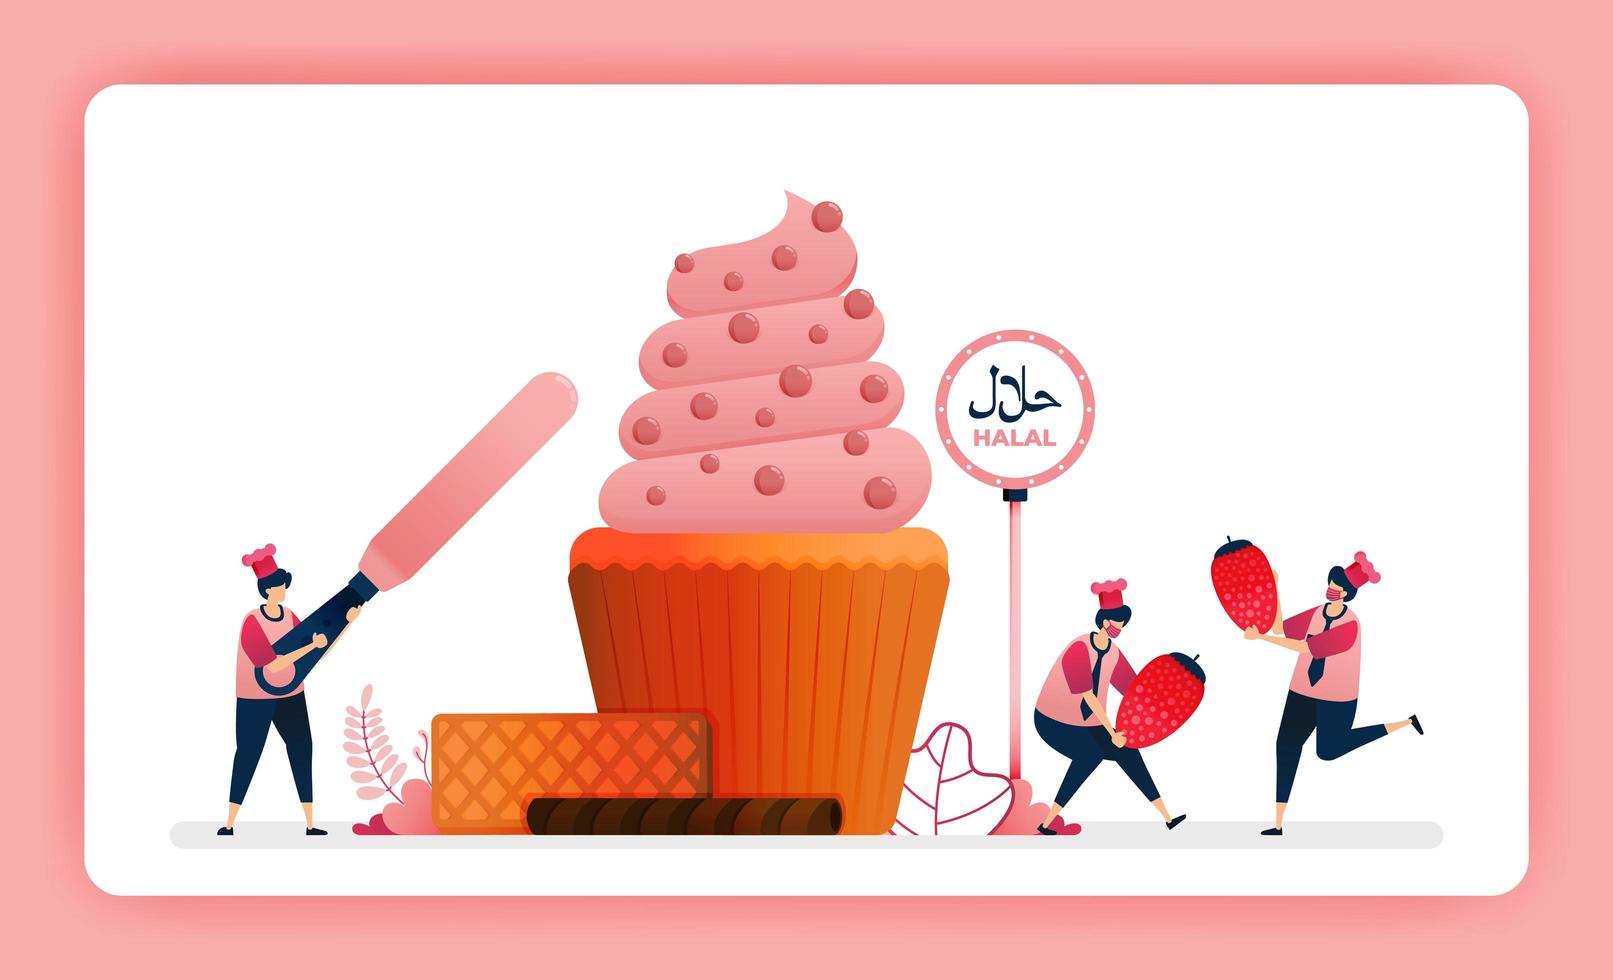 Ilustración de menú de comida halal de cupcake de fresa dulce. haciendo muffins decorados con glaseado de remolino y cacao. El diseño se puede utilizar para sitios web, sitios web, páginas de destino, banners, aplicaciones móviles, ui ux, carteles, folletos. vector